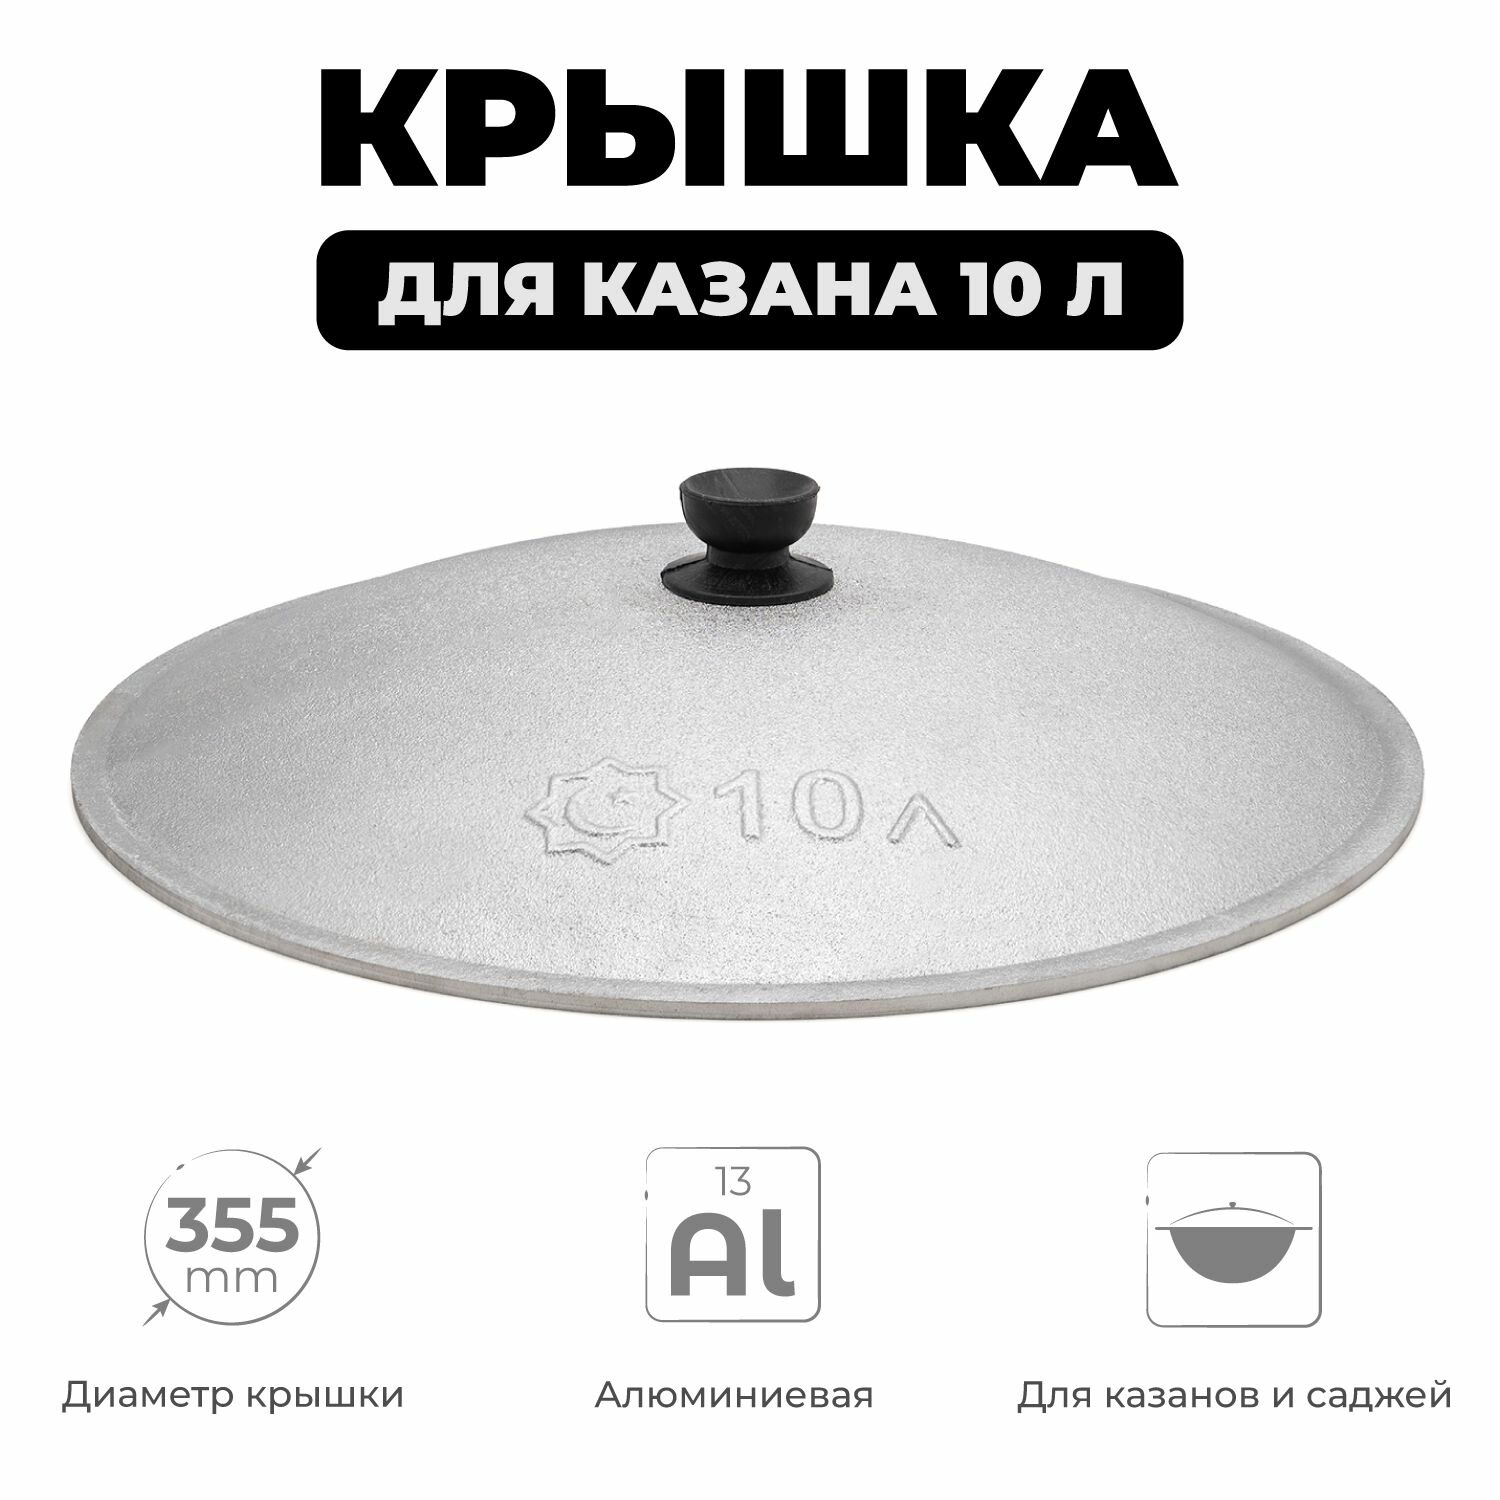 Крышка для казана 10 л алюминиевая, диаметр 35,5 см, крышка для узбекского казана